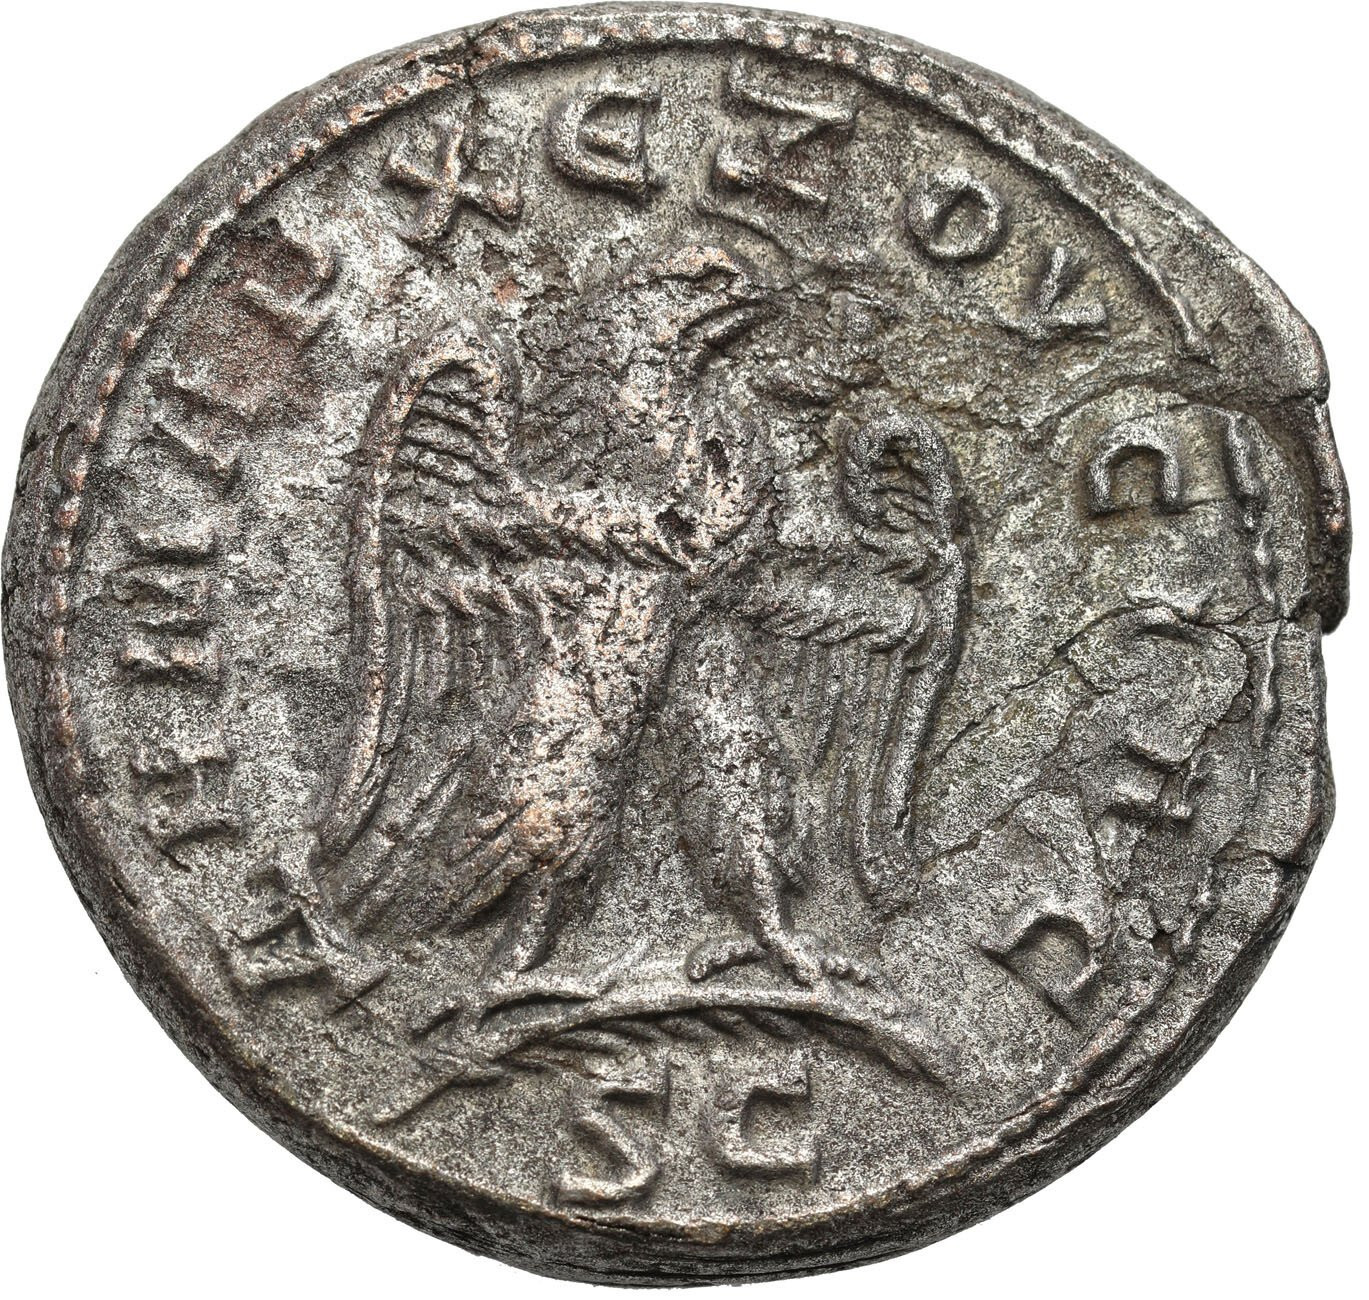  Prowincje Rzymskie - Syria, Tetradrachma, Trajan Decjusz 249 - 251 r. n. e., Antiochia